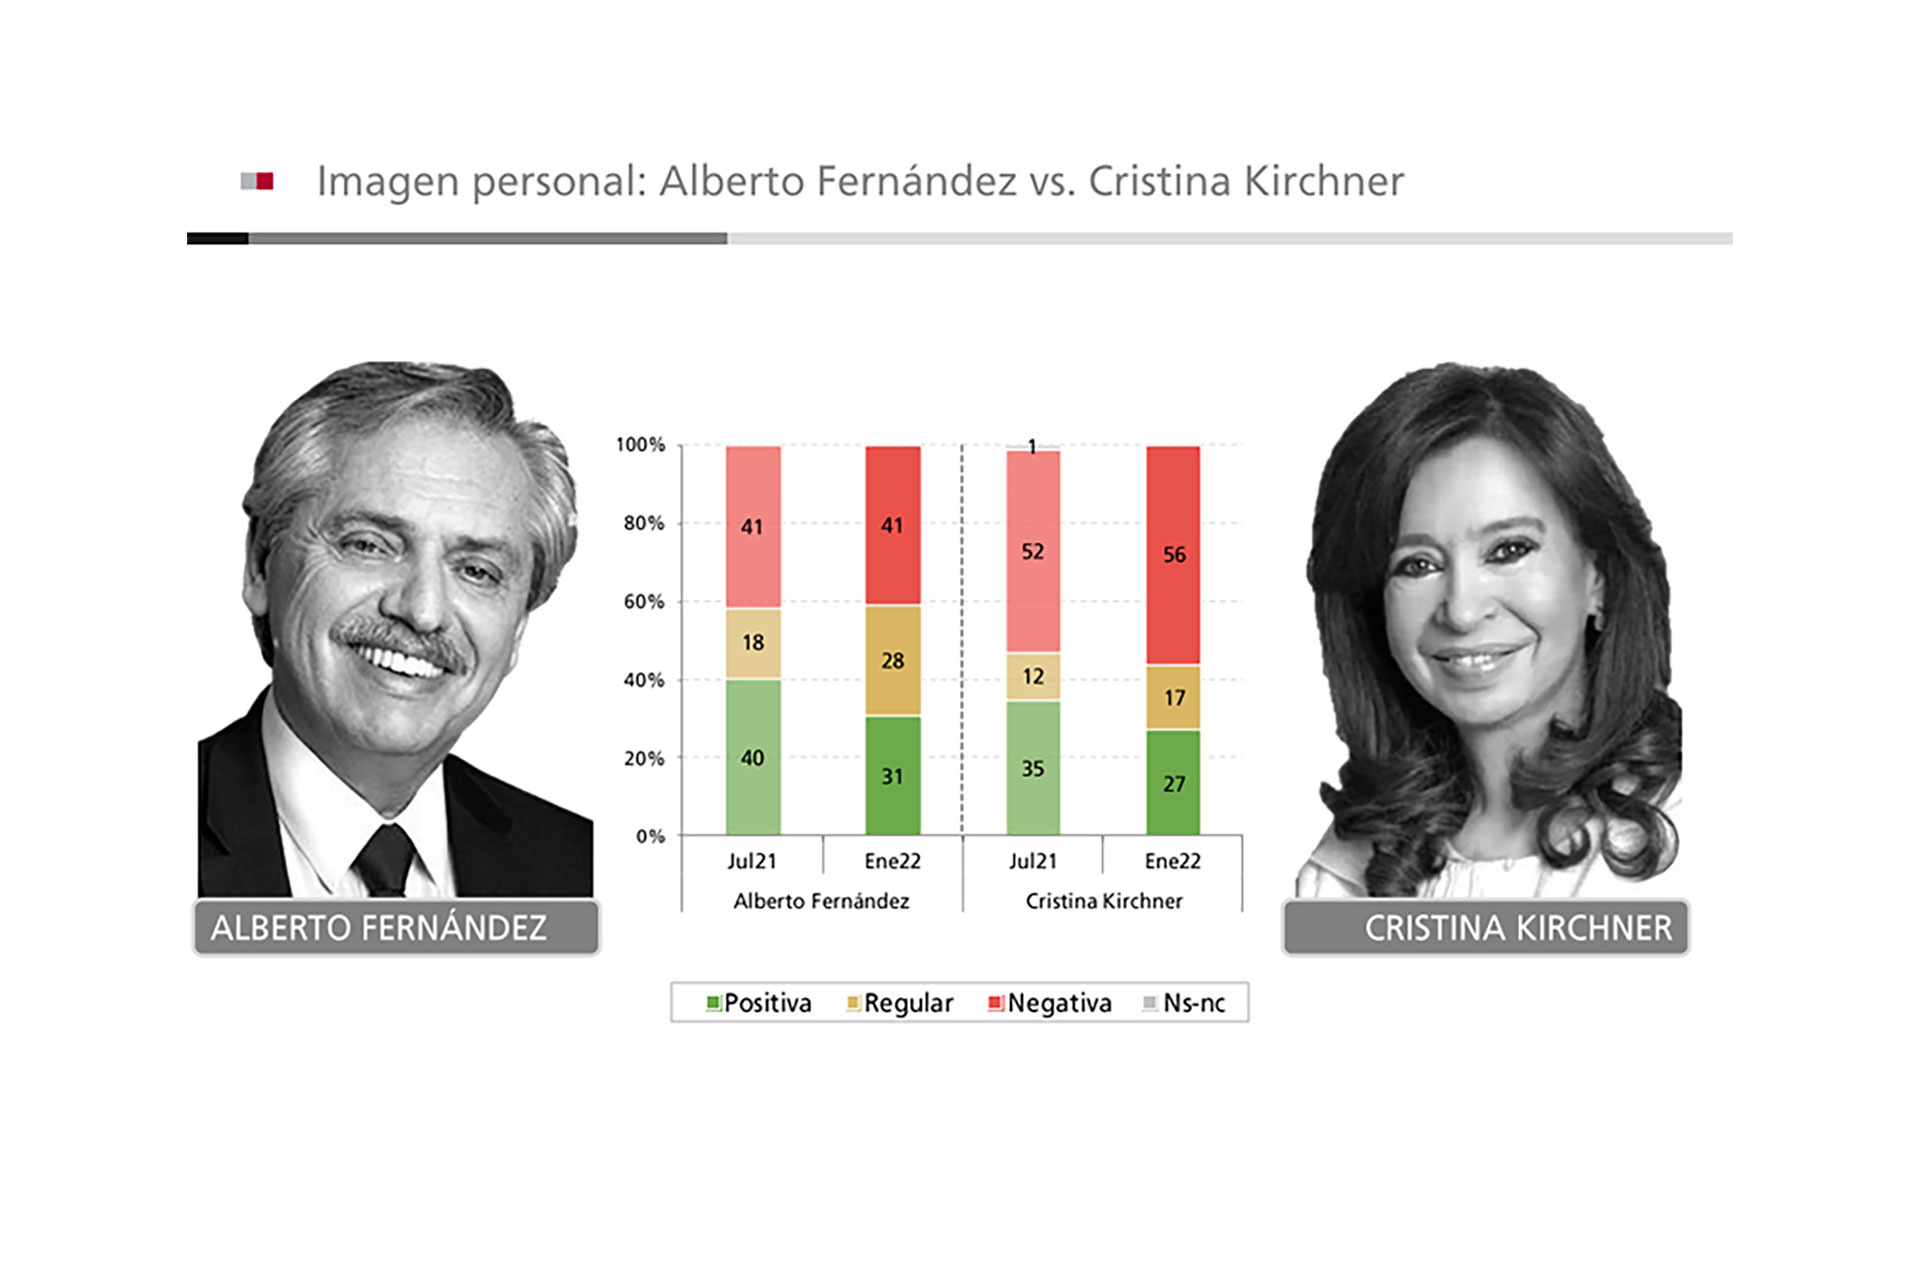 Comparación entre la percepción de Alberto Fernández y Cristina Kirchner